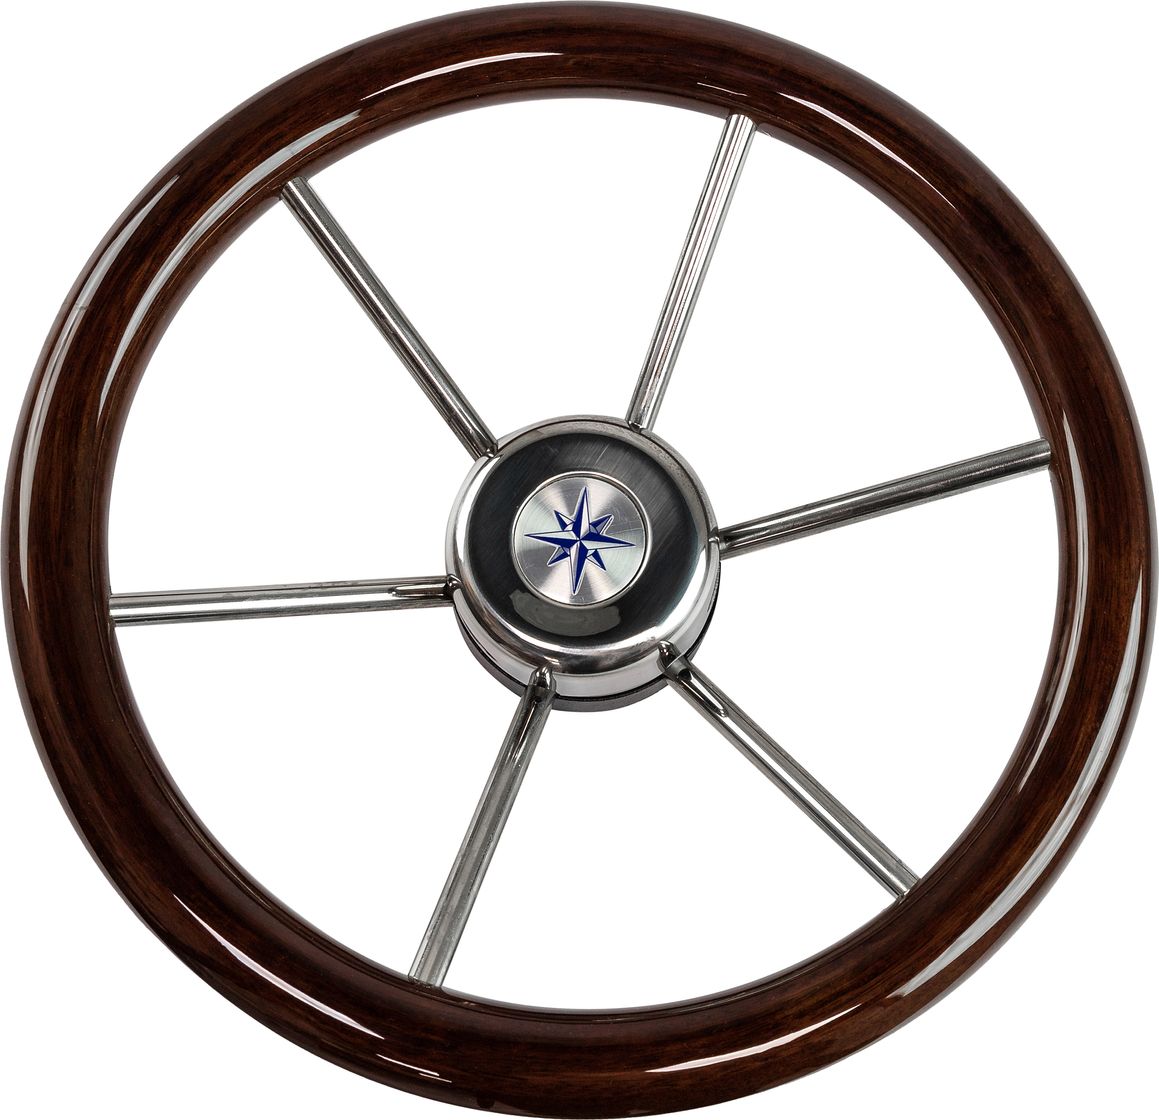 Рулевое колесо LEADER WOOD деревянный обод серебряные спицы д. 340 мм VN7340-33 рулевое колесо leader wood деревянный обод серебряные спицы д 340 мм vn7340 33